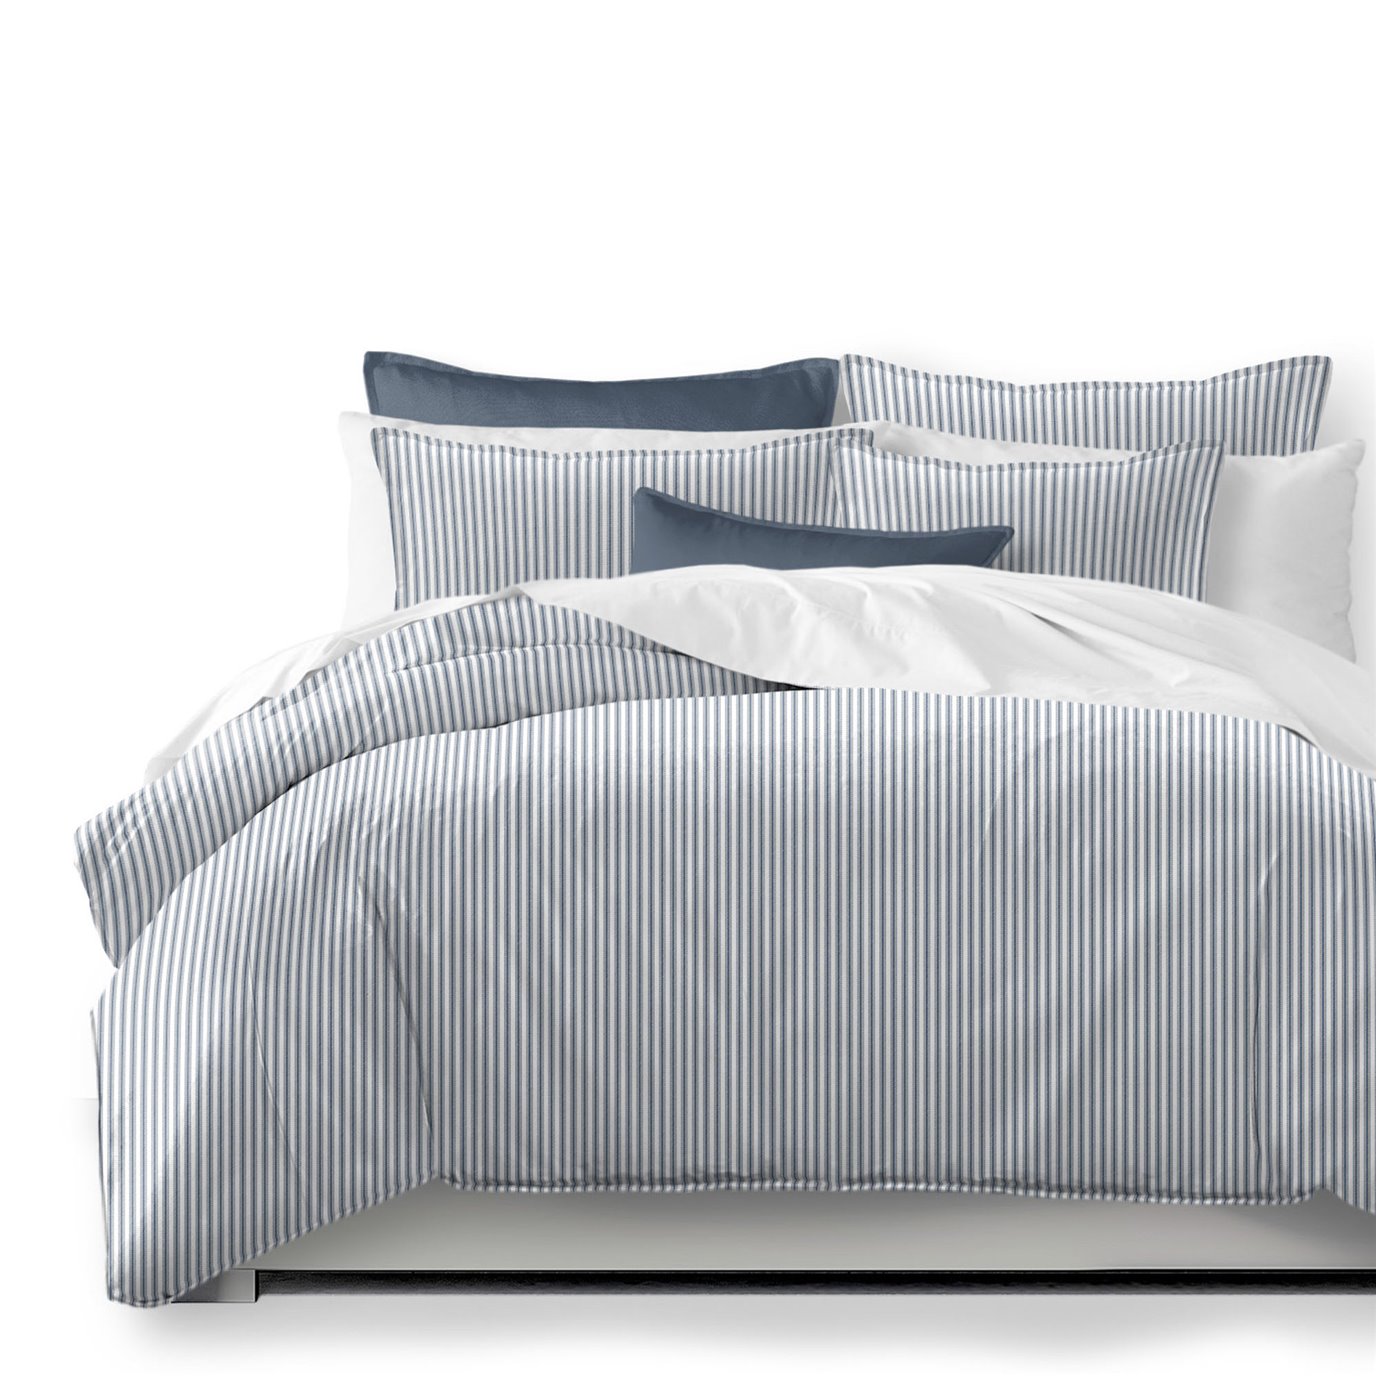 Cruz Ticking Stripes White/Navy Duvet Cover and Pillow Sham(s) Set - Size Full